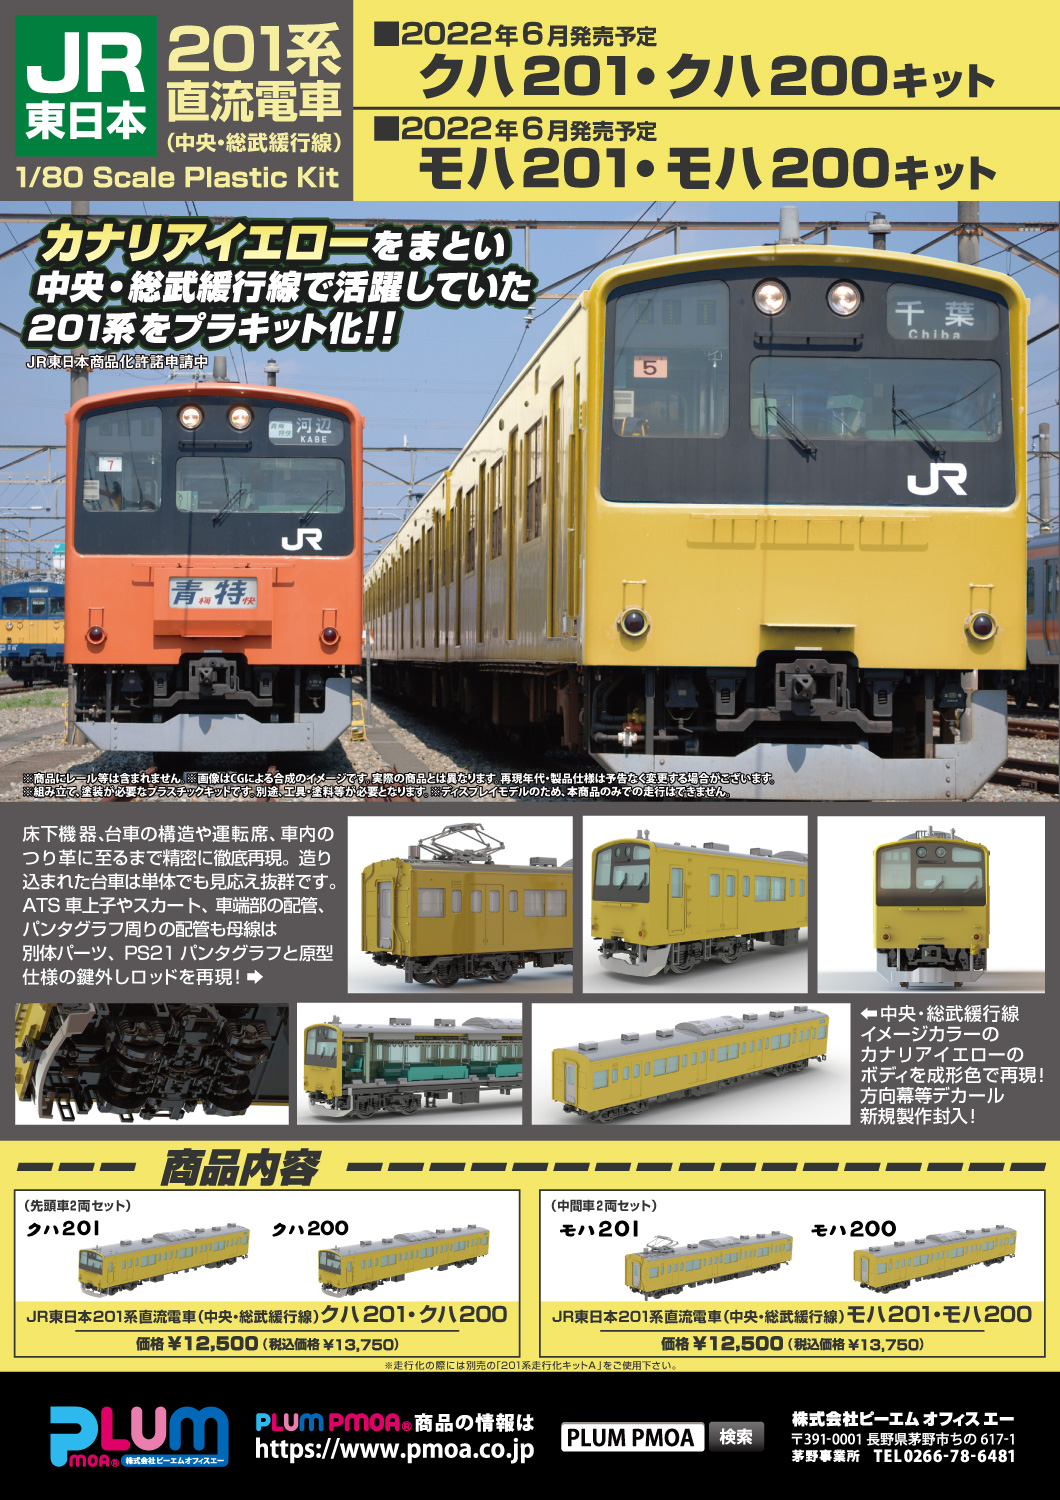 電車 国鉄・ＪＲ型 キット - エコーモデルOfficial Web Site